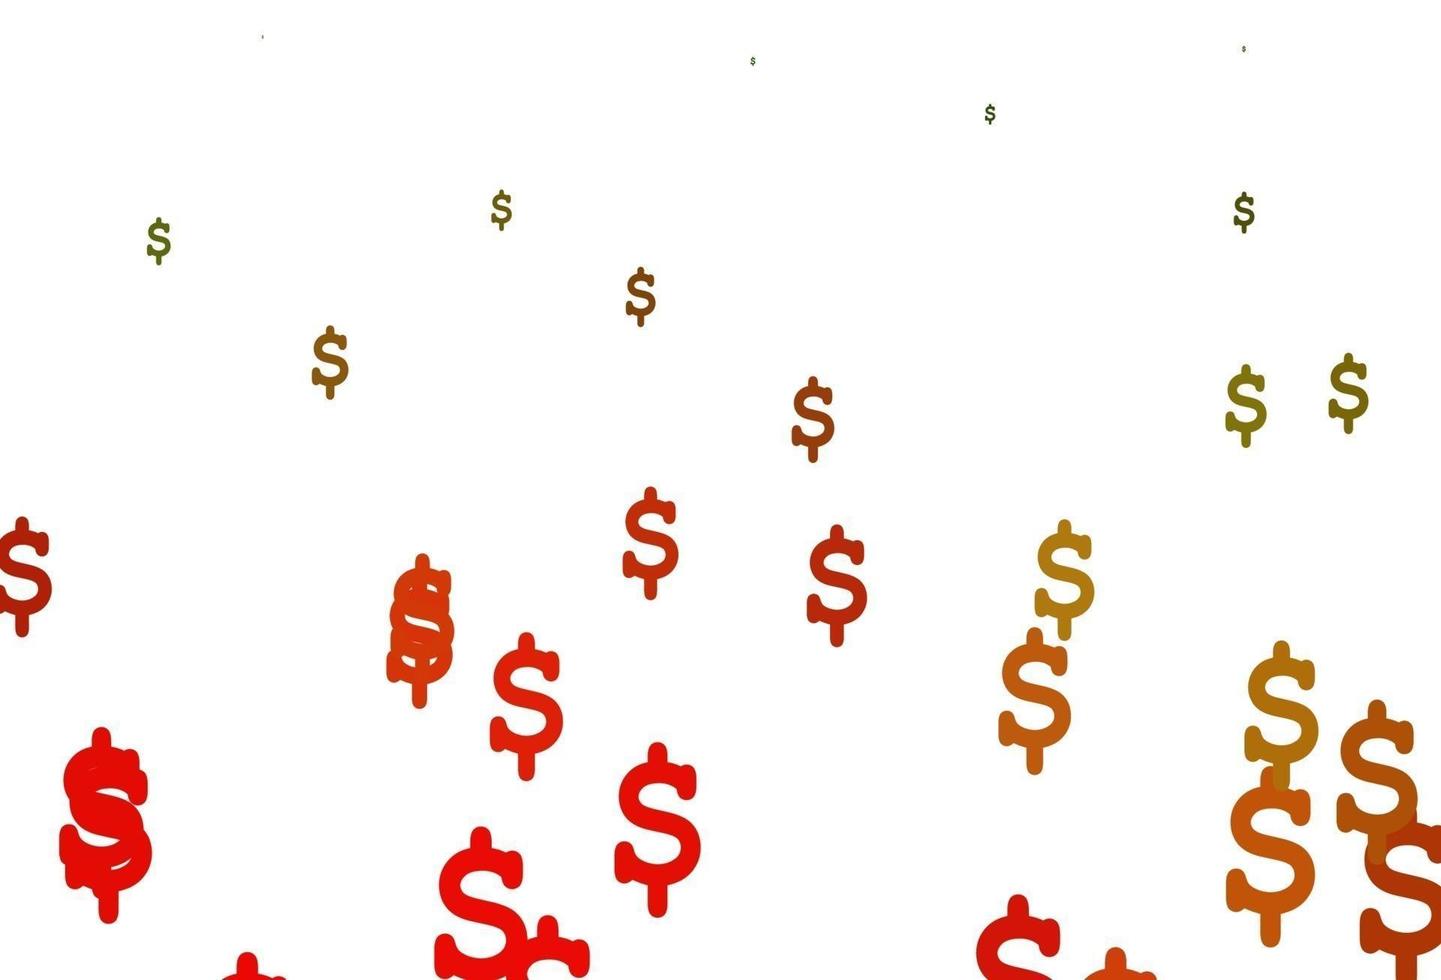 layout de vetor verde, vermelho claro com símbolos bancários.